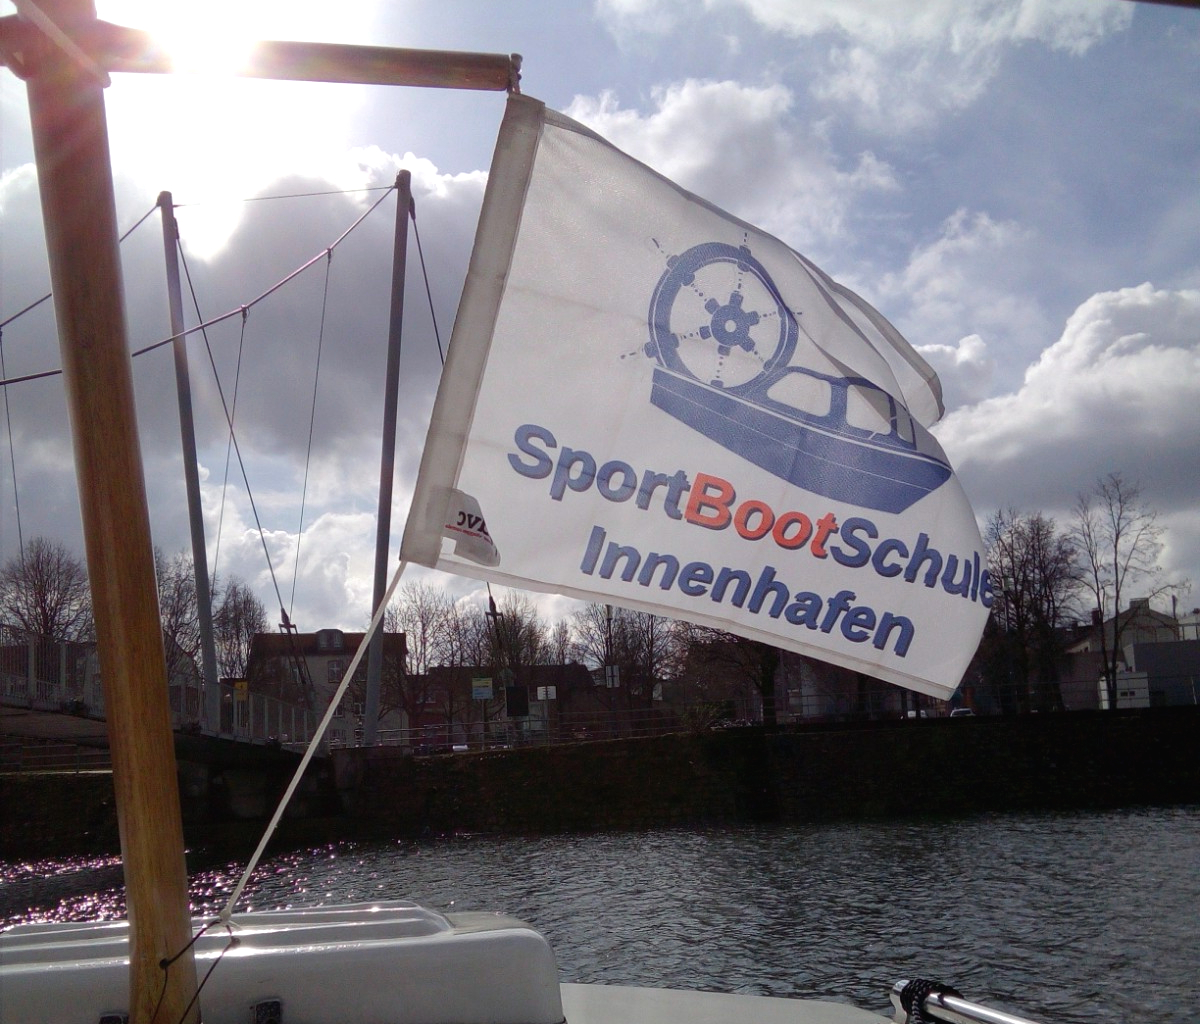 #Buckelbrücke #Innenhafen #DuisburgTourismus #MarinaDuisburg #Duisburg #Hochwasser #Sportbootführerschein #Bootsschule @DVCvlag